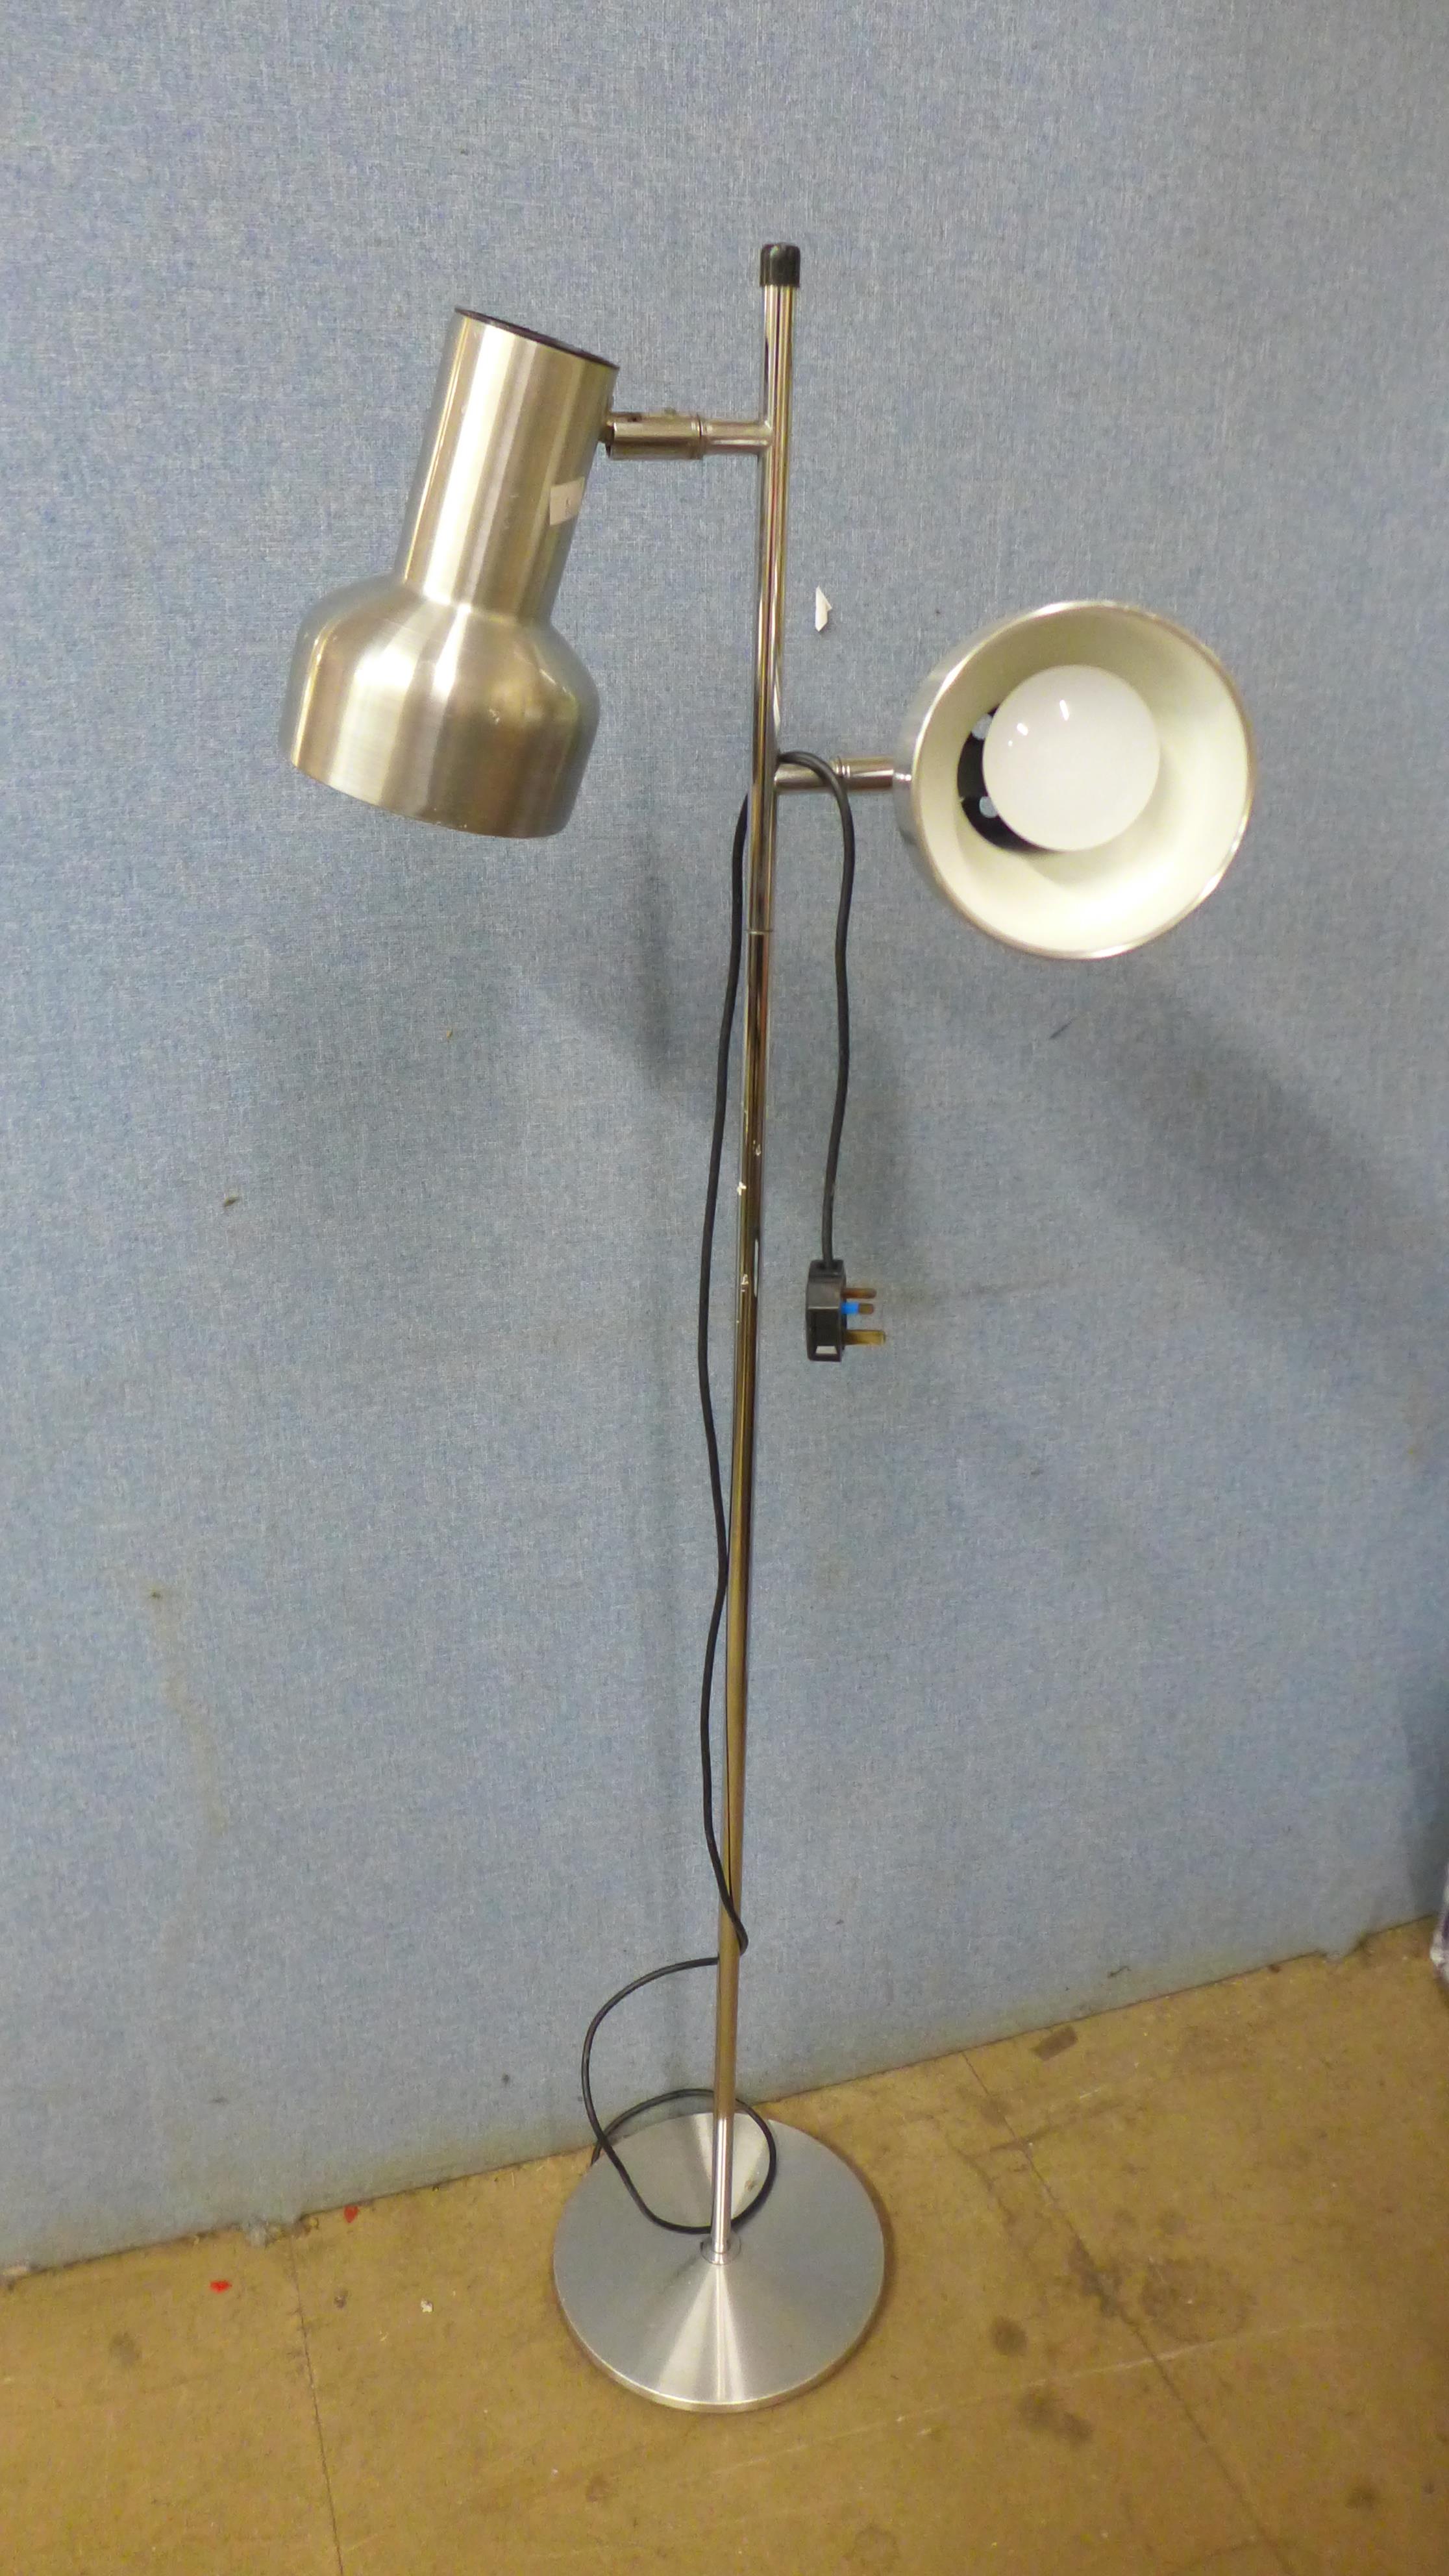 A chrome floor standing spotlight lamp